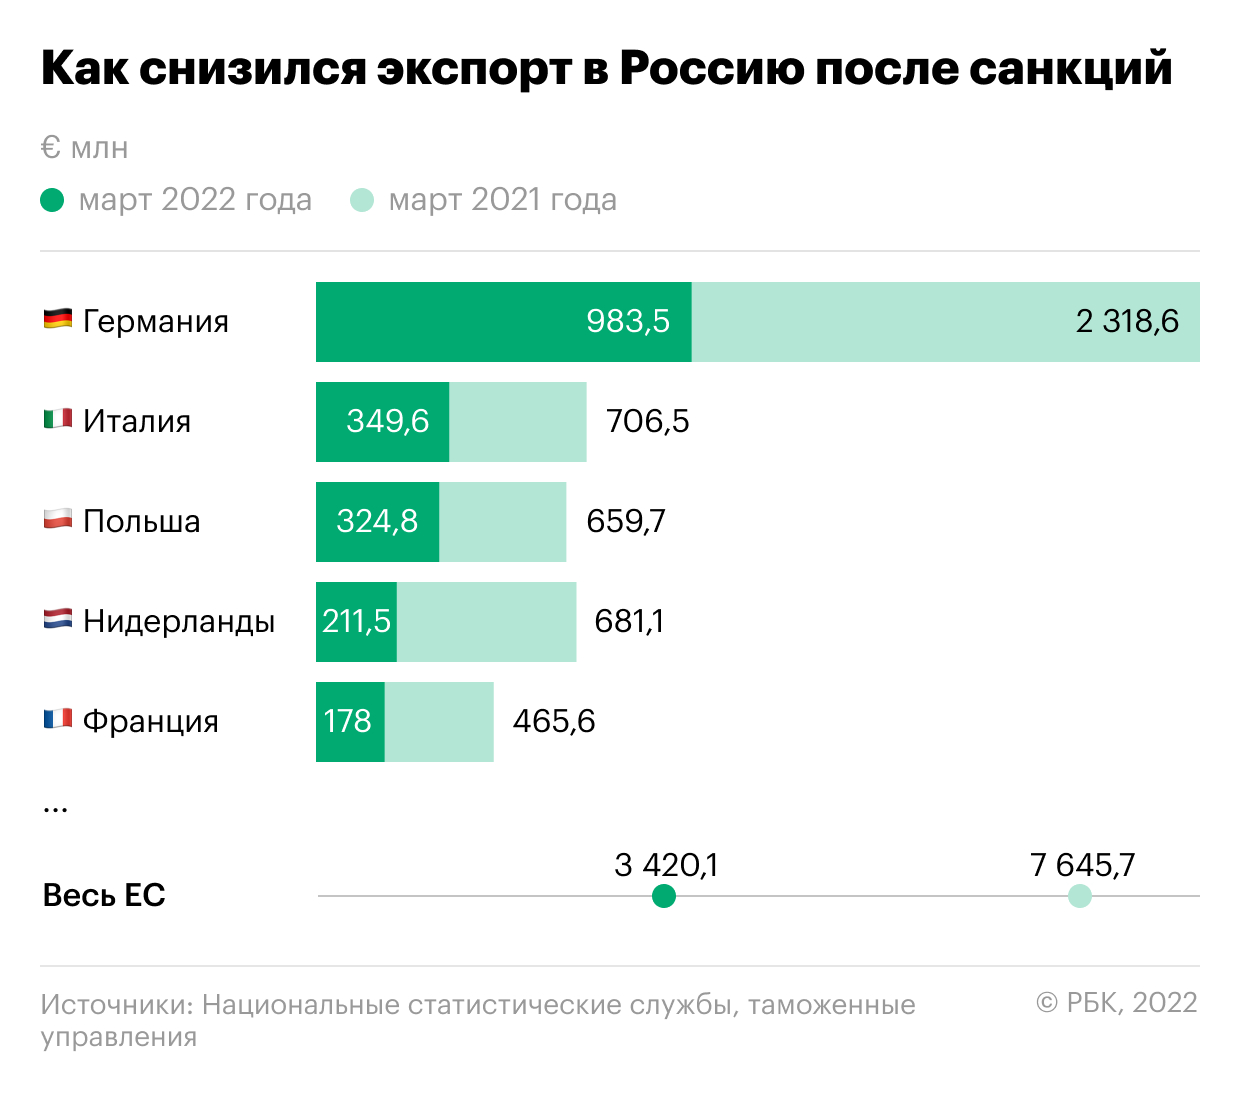 1340 - годовой рост экспорта автомобилей в Россию из Китая за август